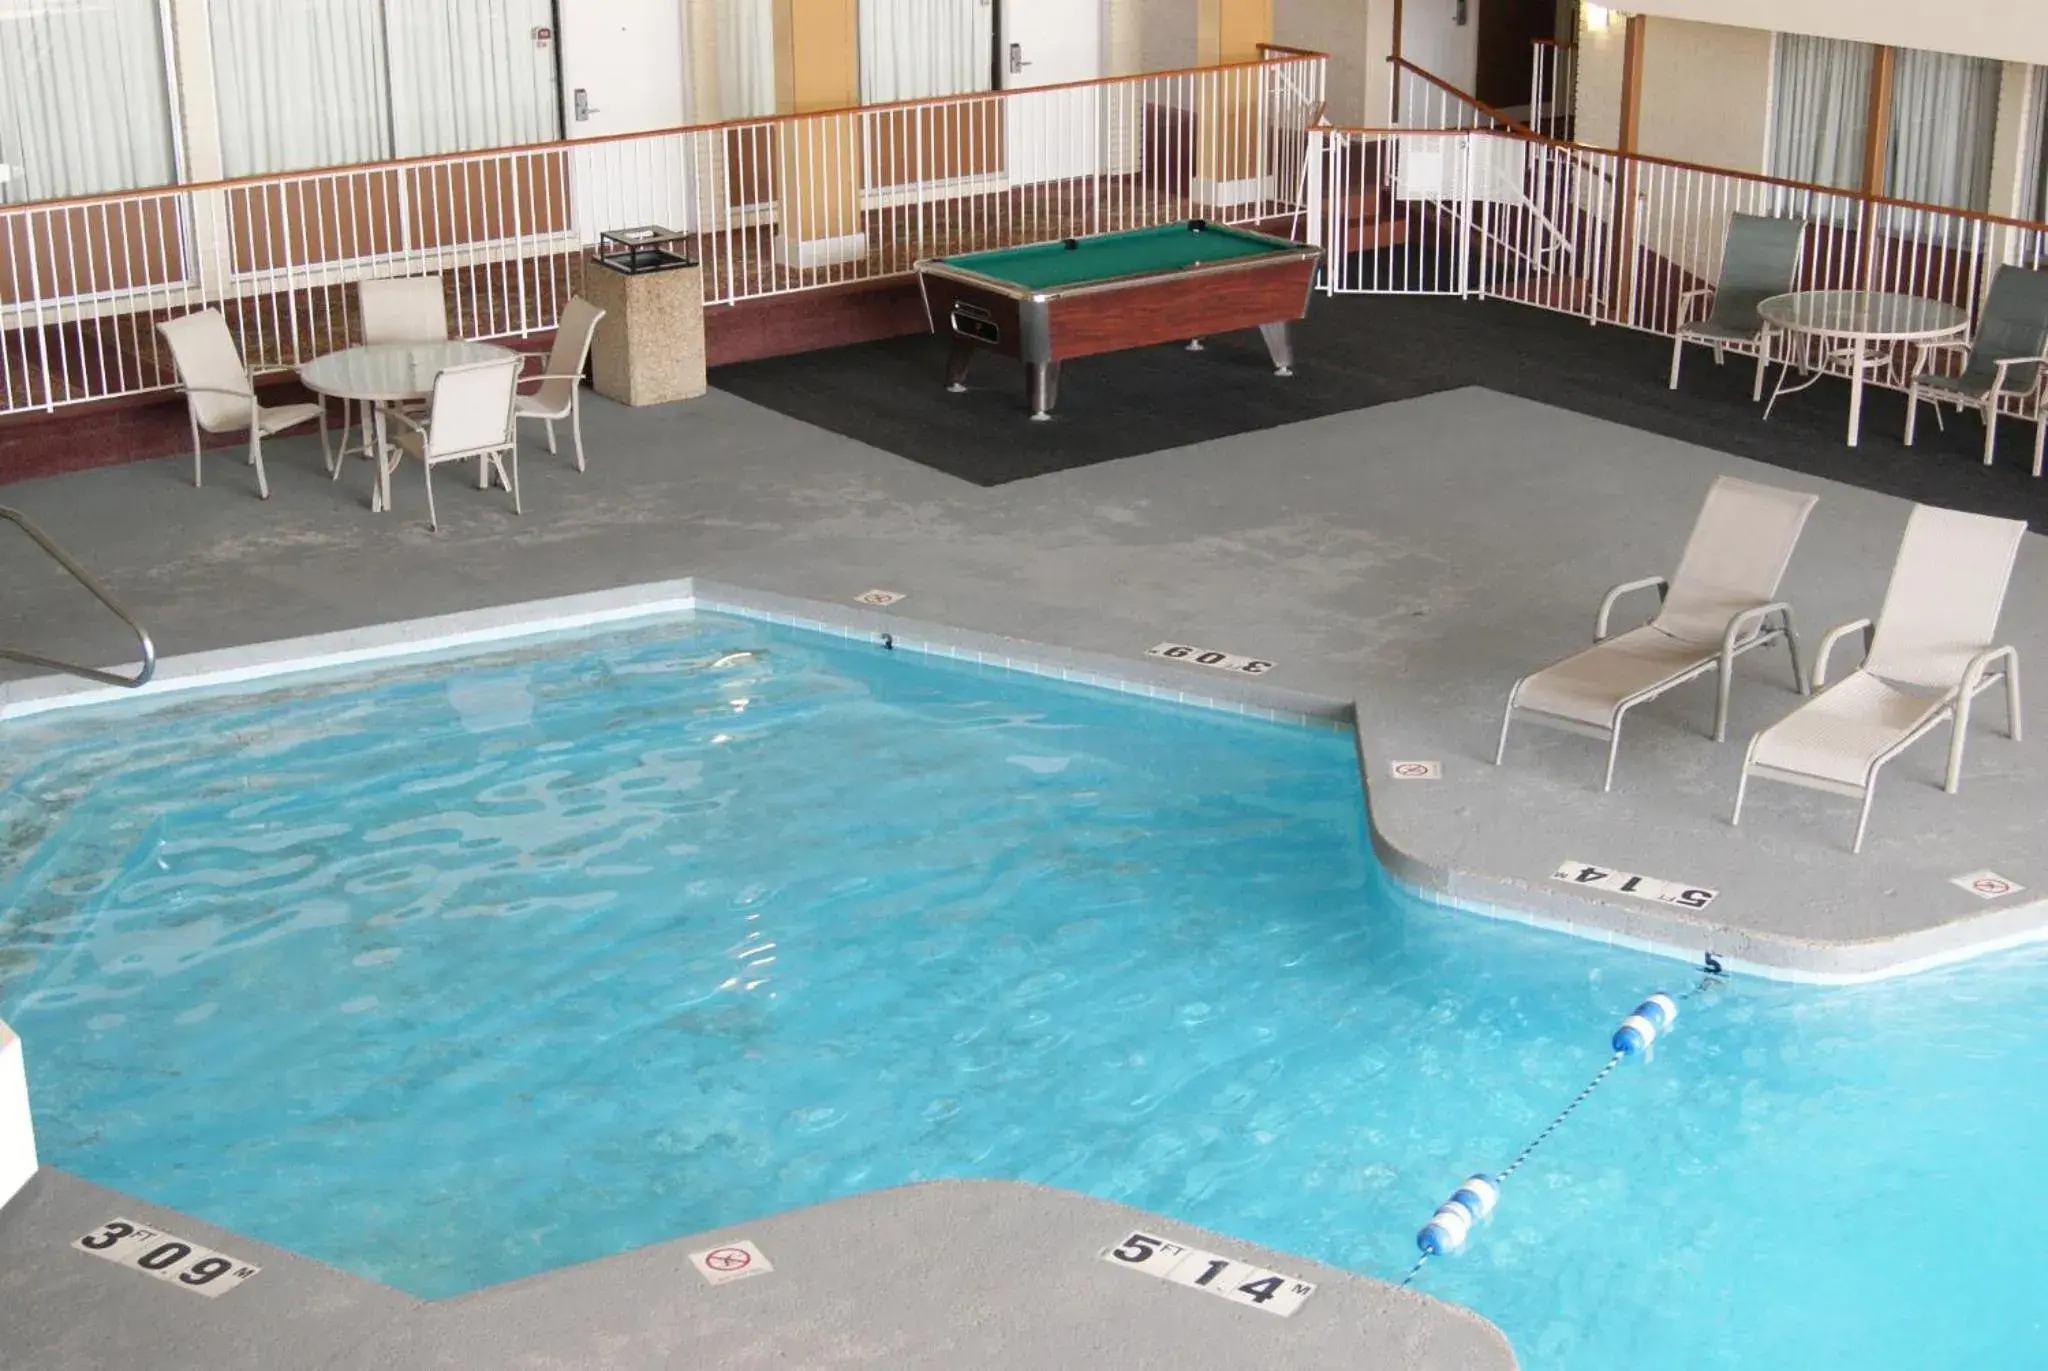 Pool View in Motel 6 Hastings, NE